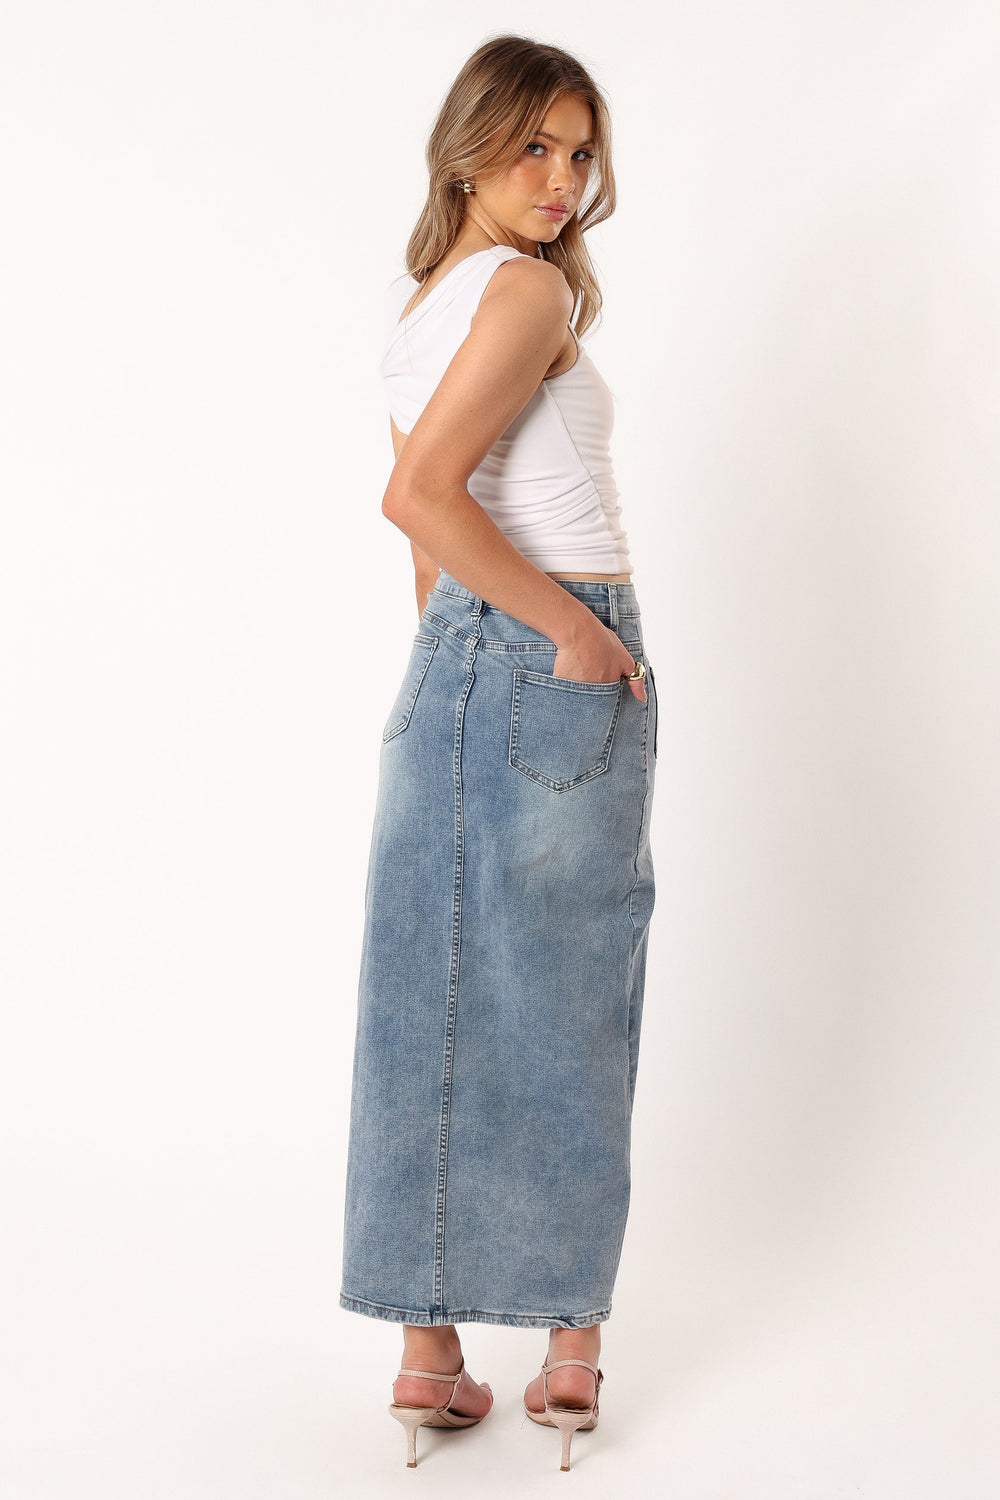 BOTTOMS @Weller Denim Midi Skirt - Light Denim